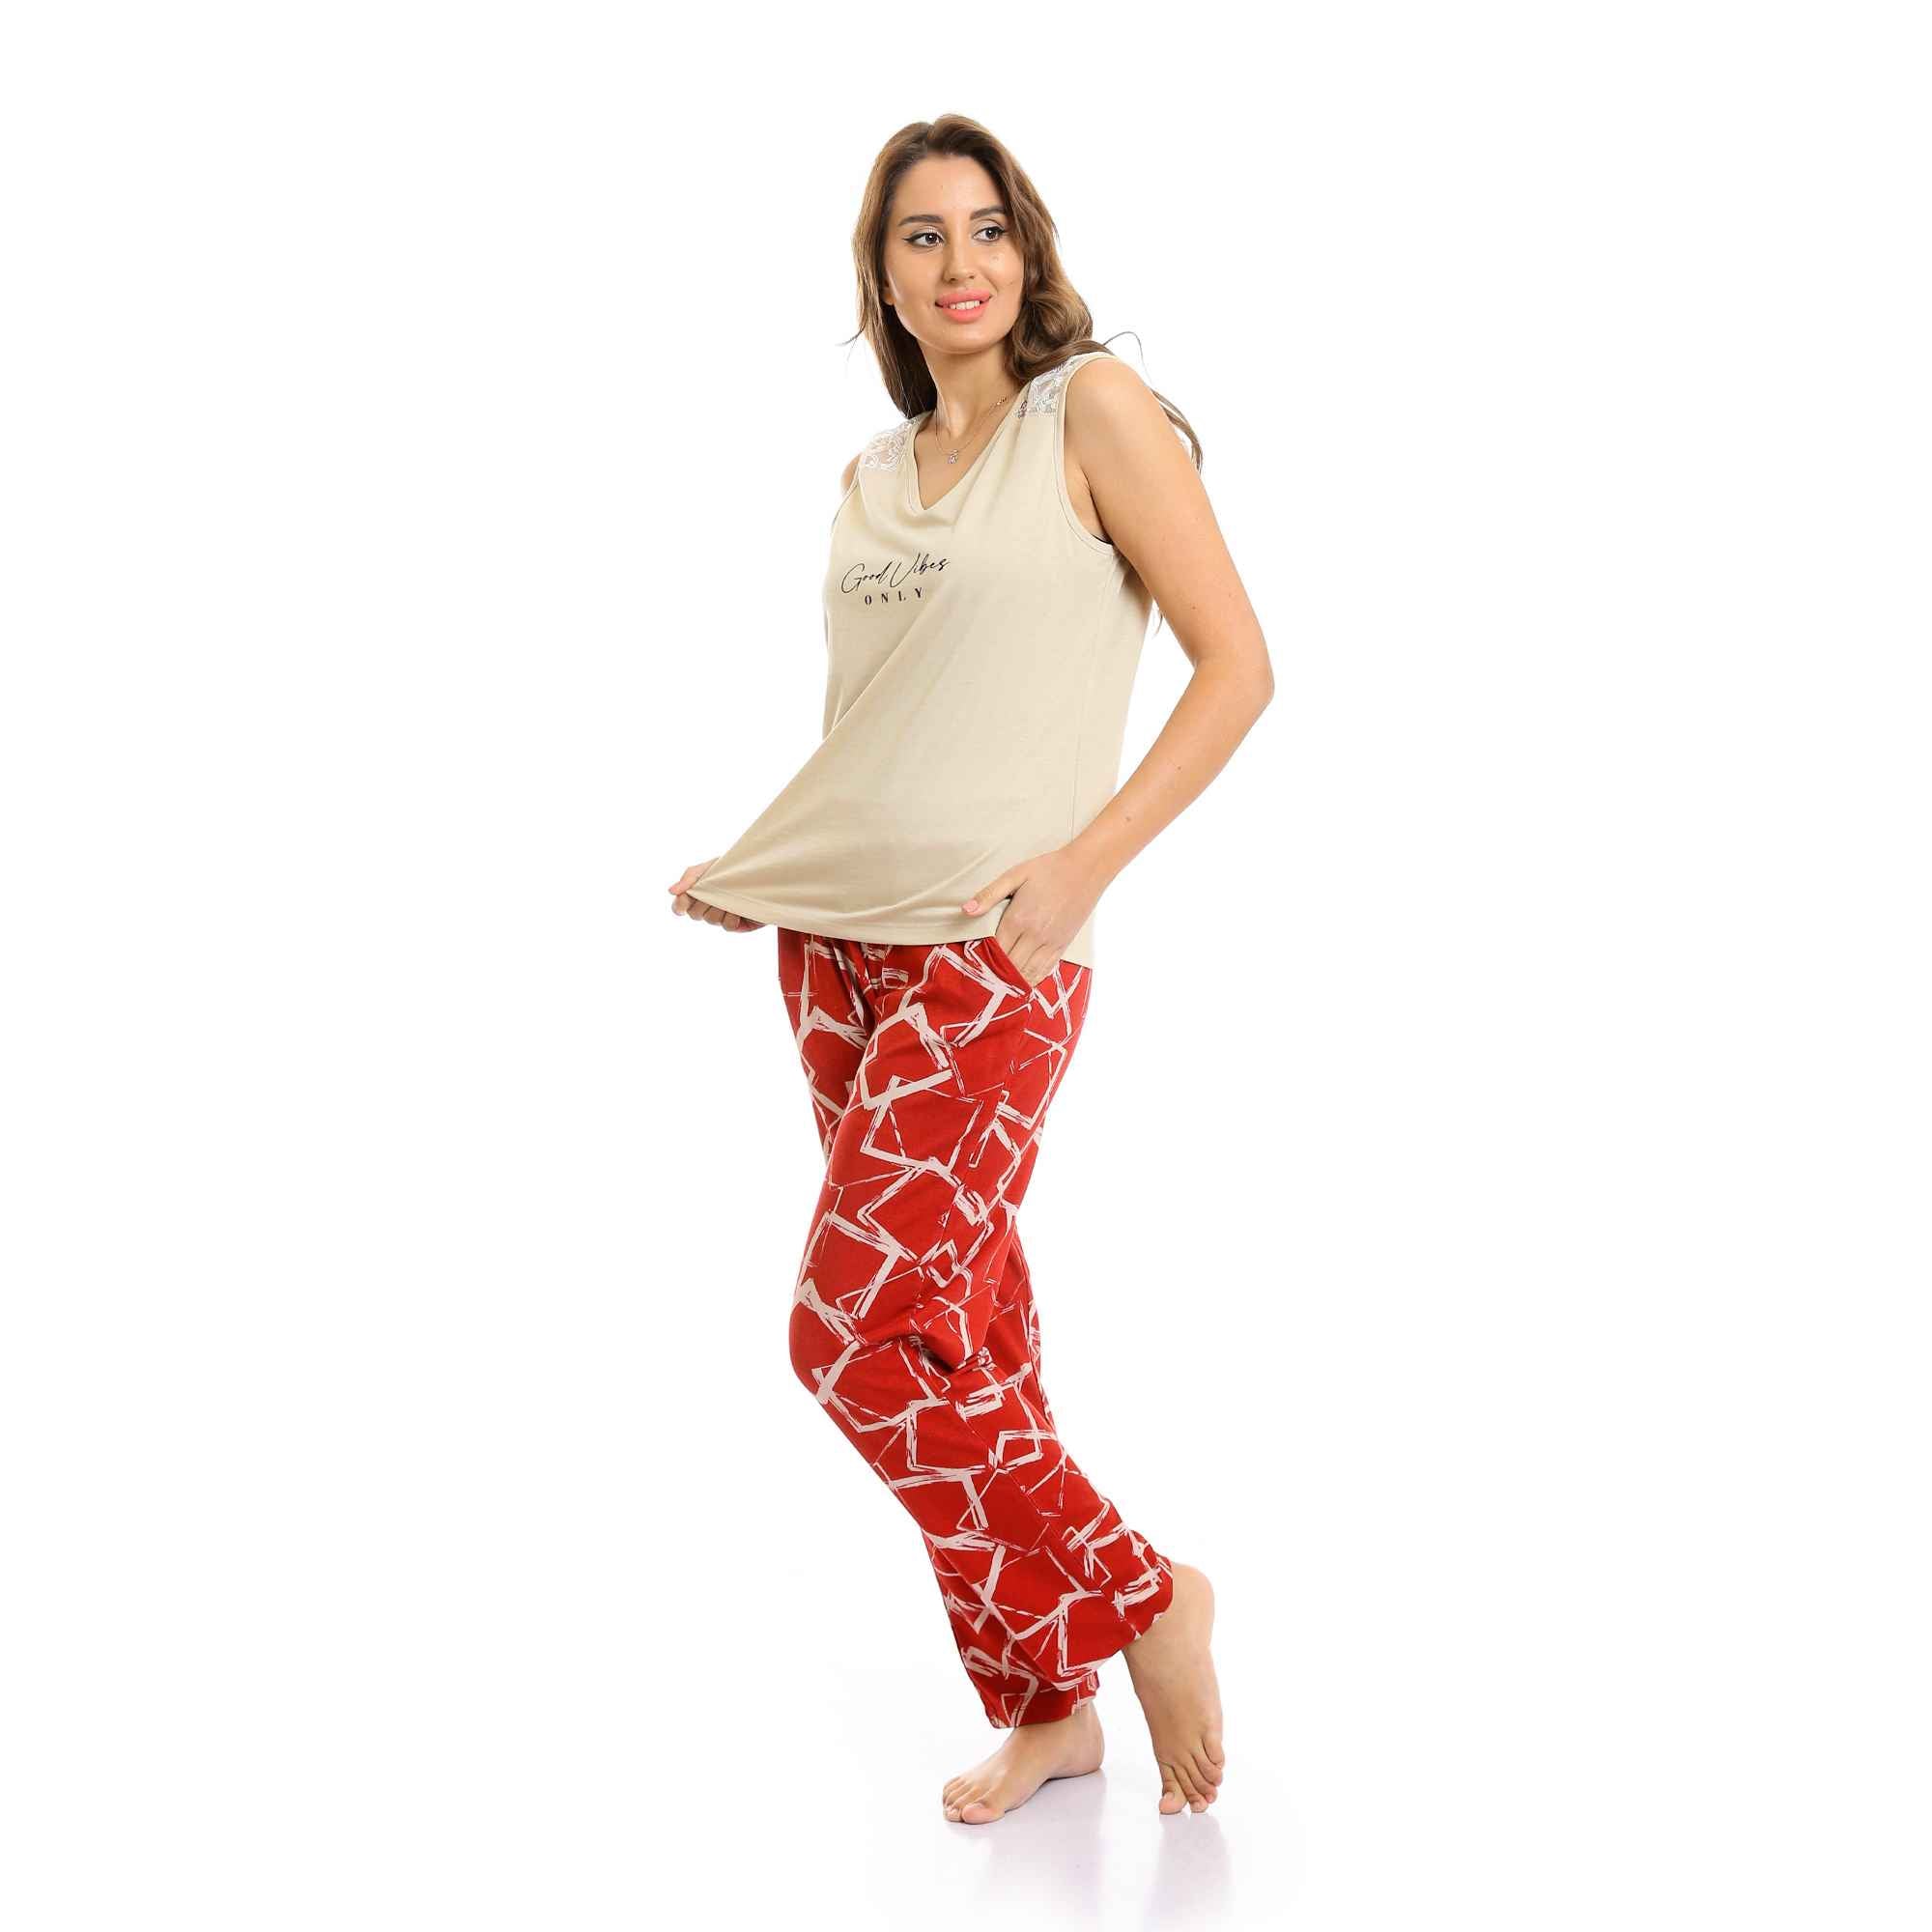 "Good Vibes" V-Neck Top & Patterned Pants Pajama Set - Beige & Red